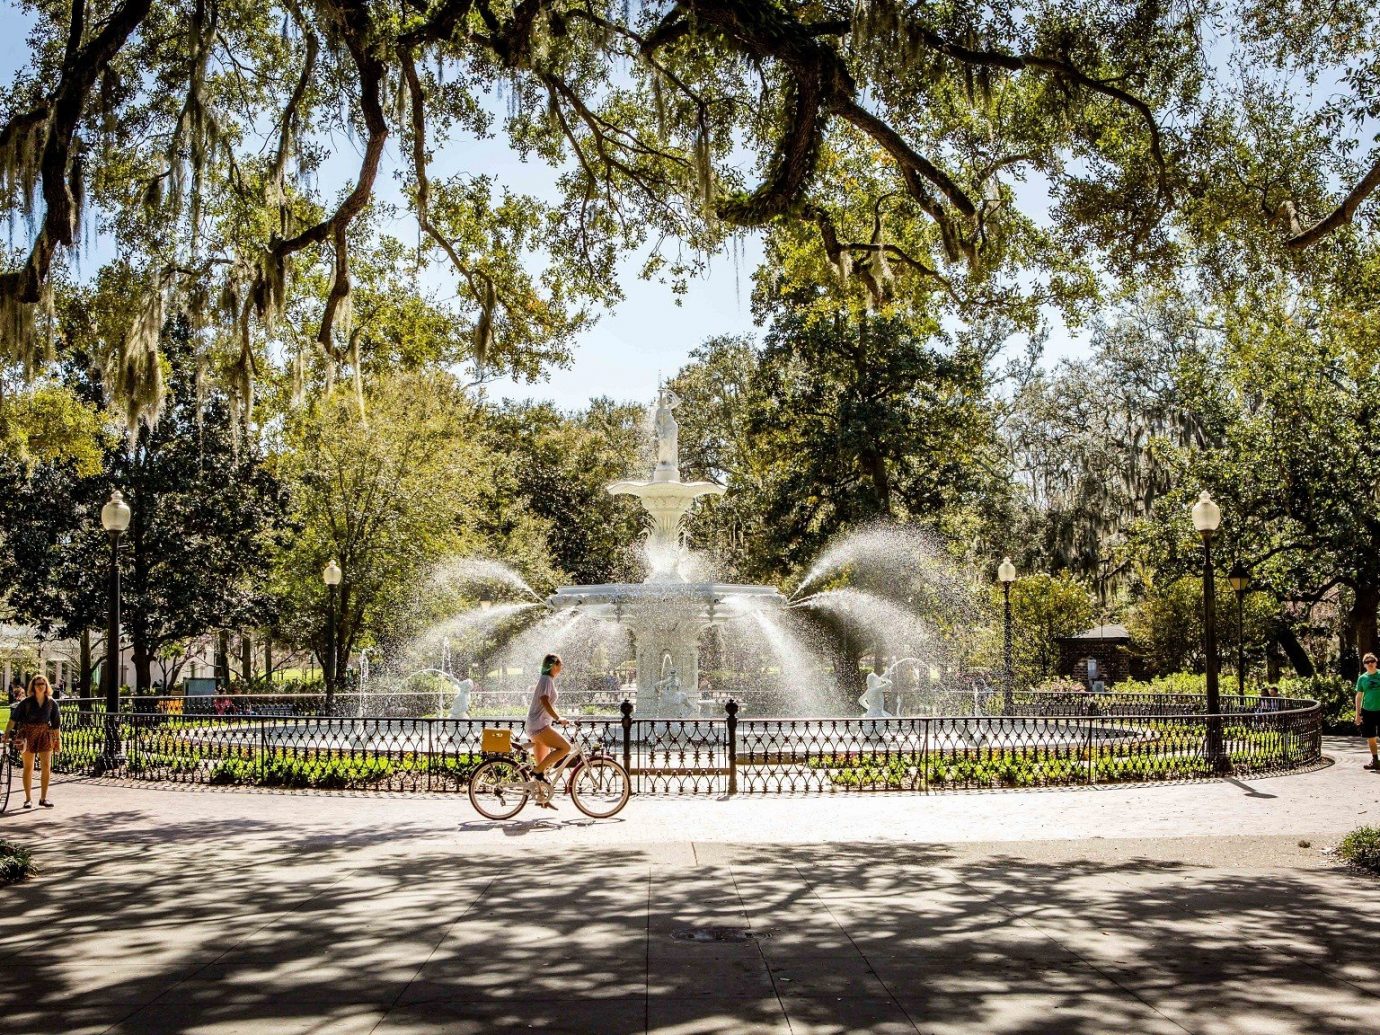 Fountain in a park at Savannah, GA